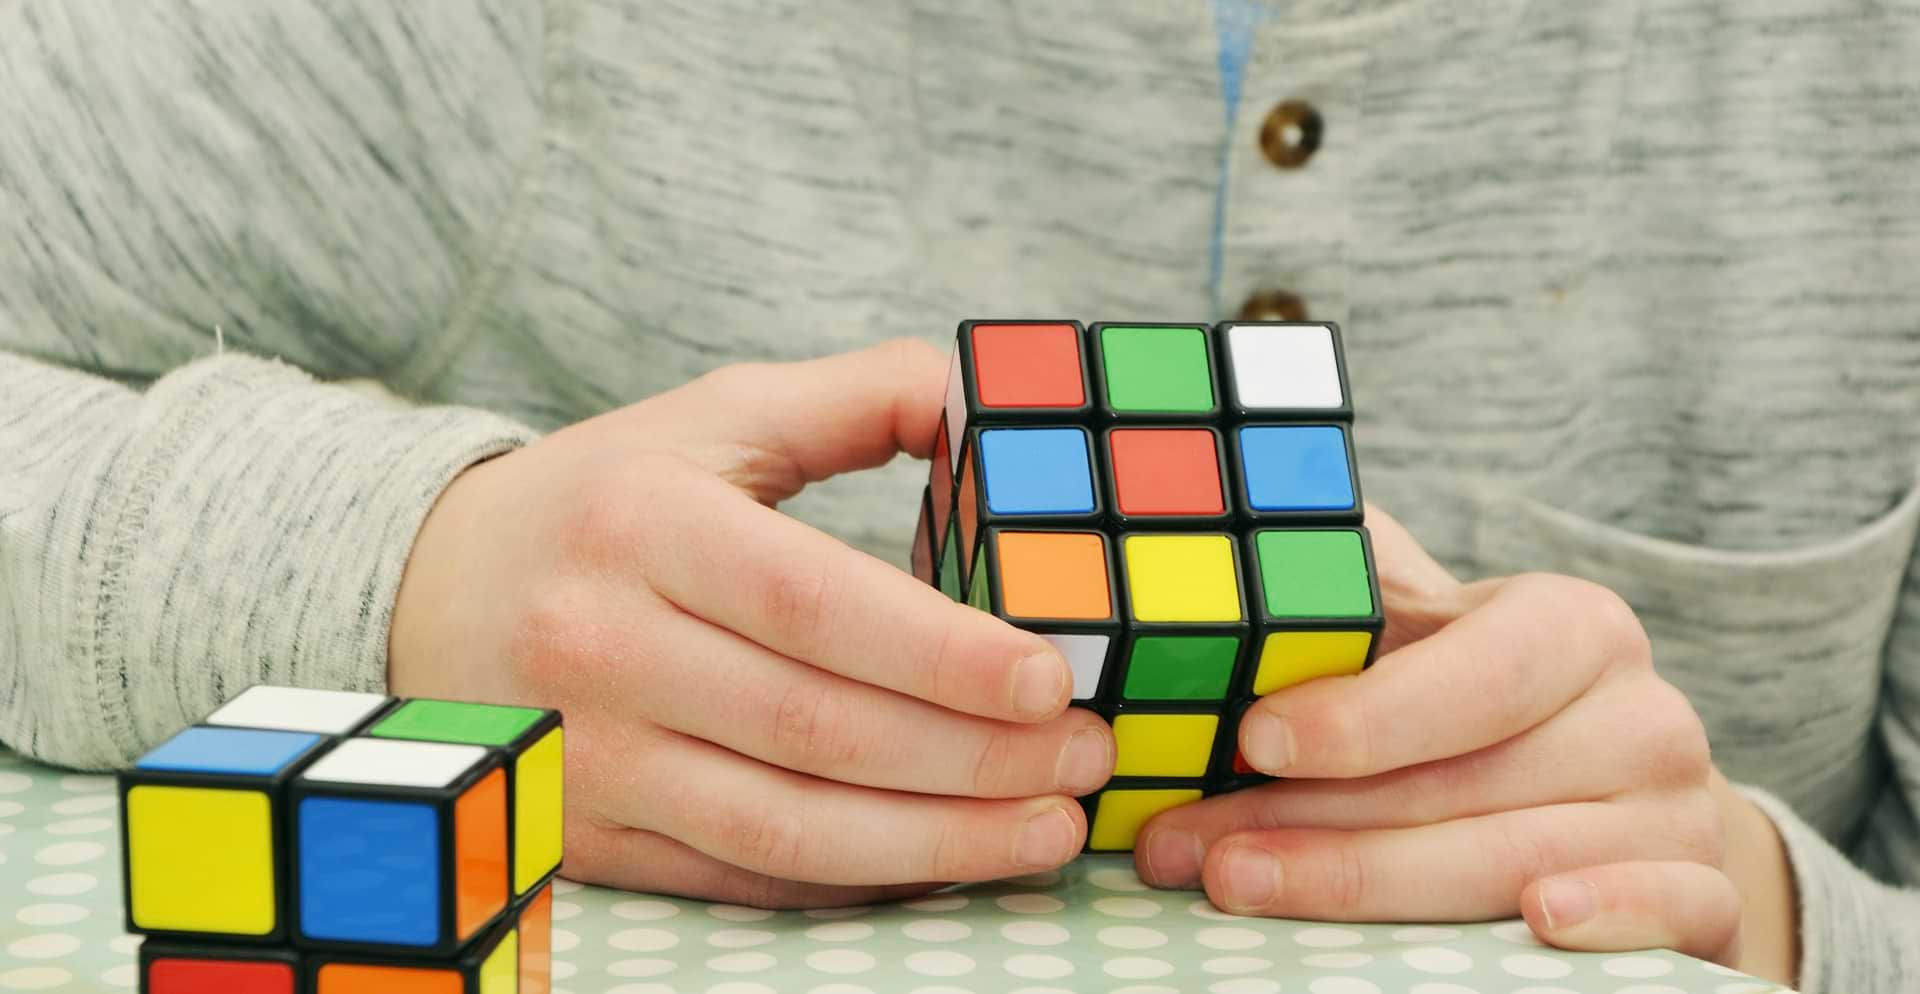 Ребенок в 9 лет побил рекорд скорости сборки кубика Рубика, появилось впечатляющее видео